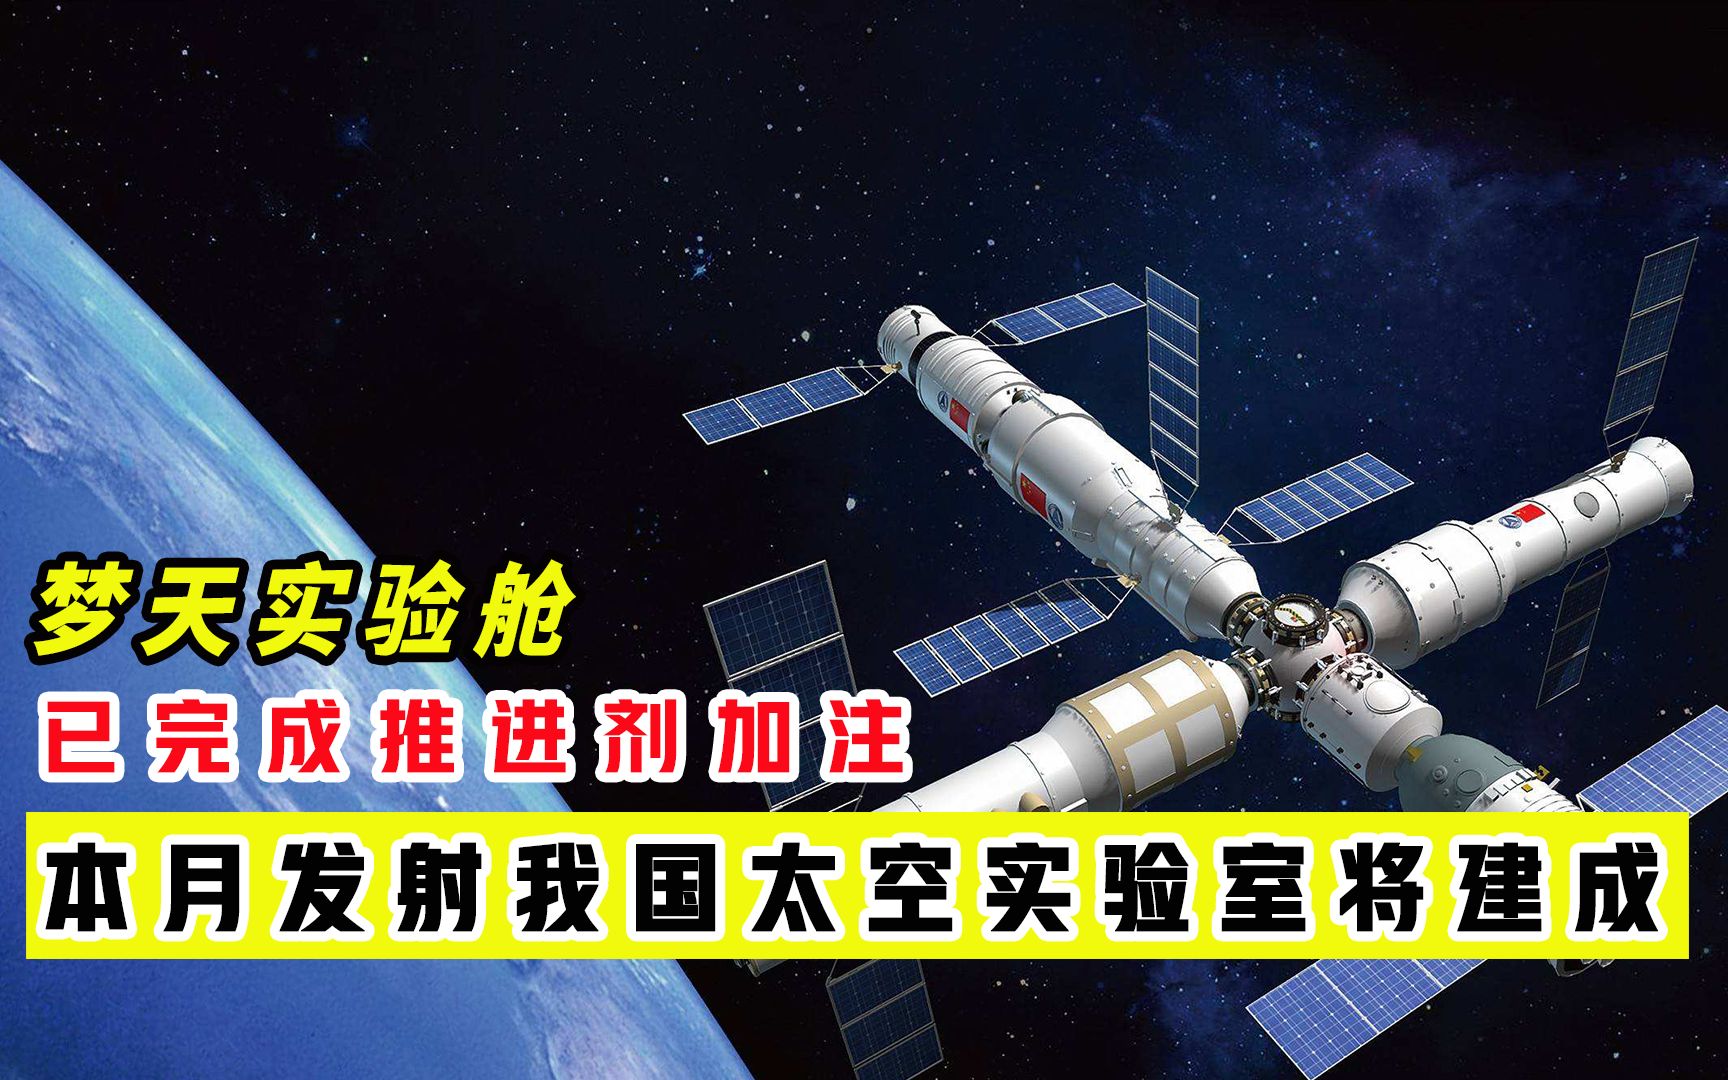 首批中国宇航员入住“天宫”空间站 NASA局长向中国同仁表示祝贺 - 2021年6月17日, 俄罗斯卫星通讯社